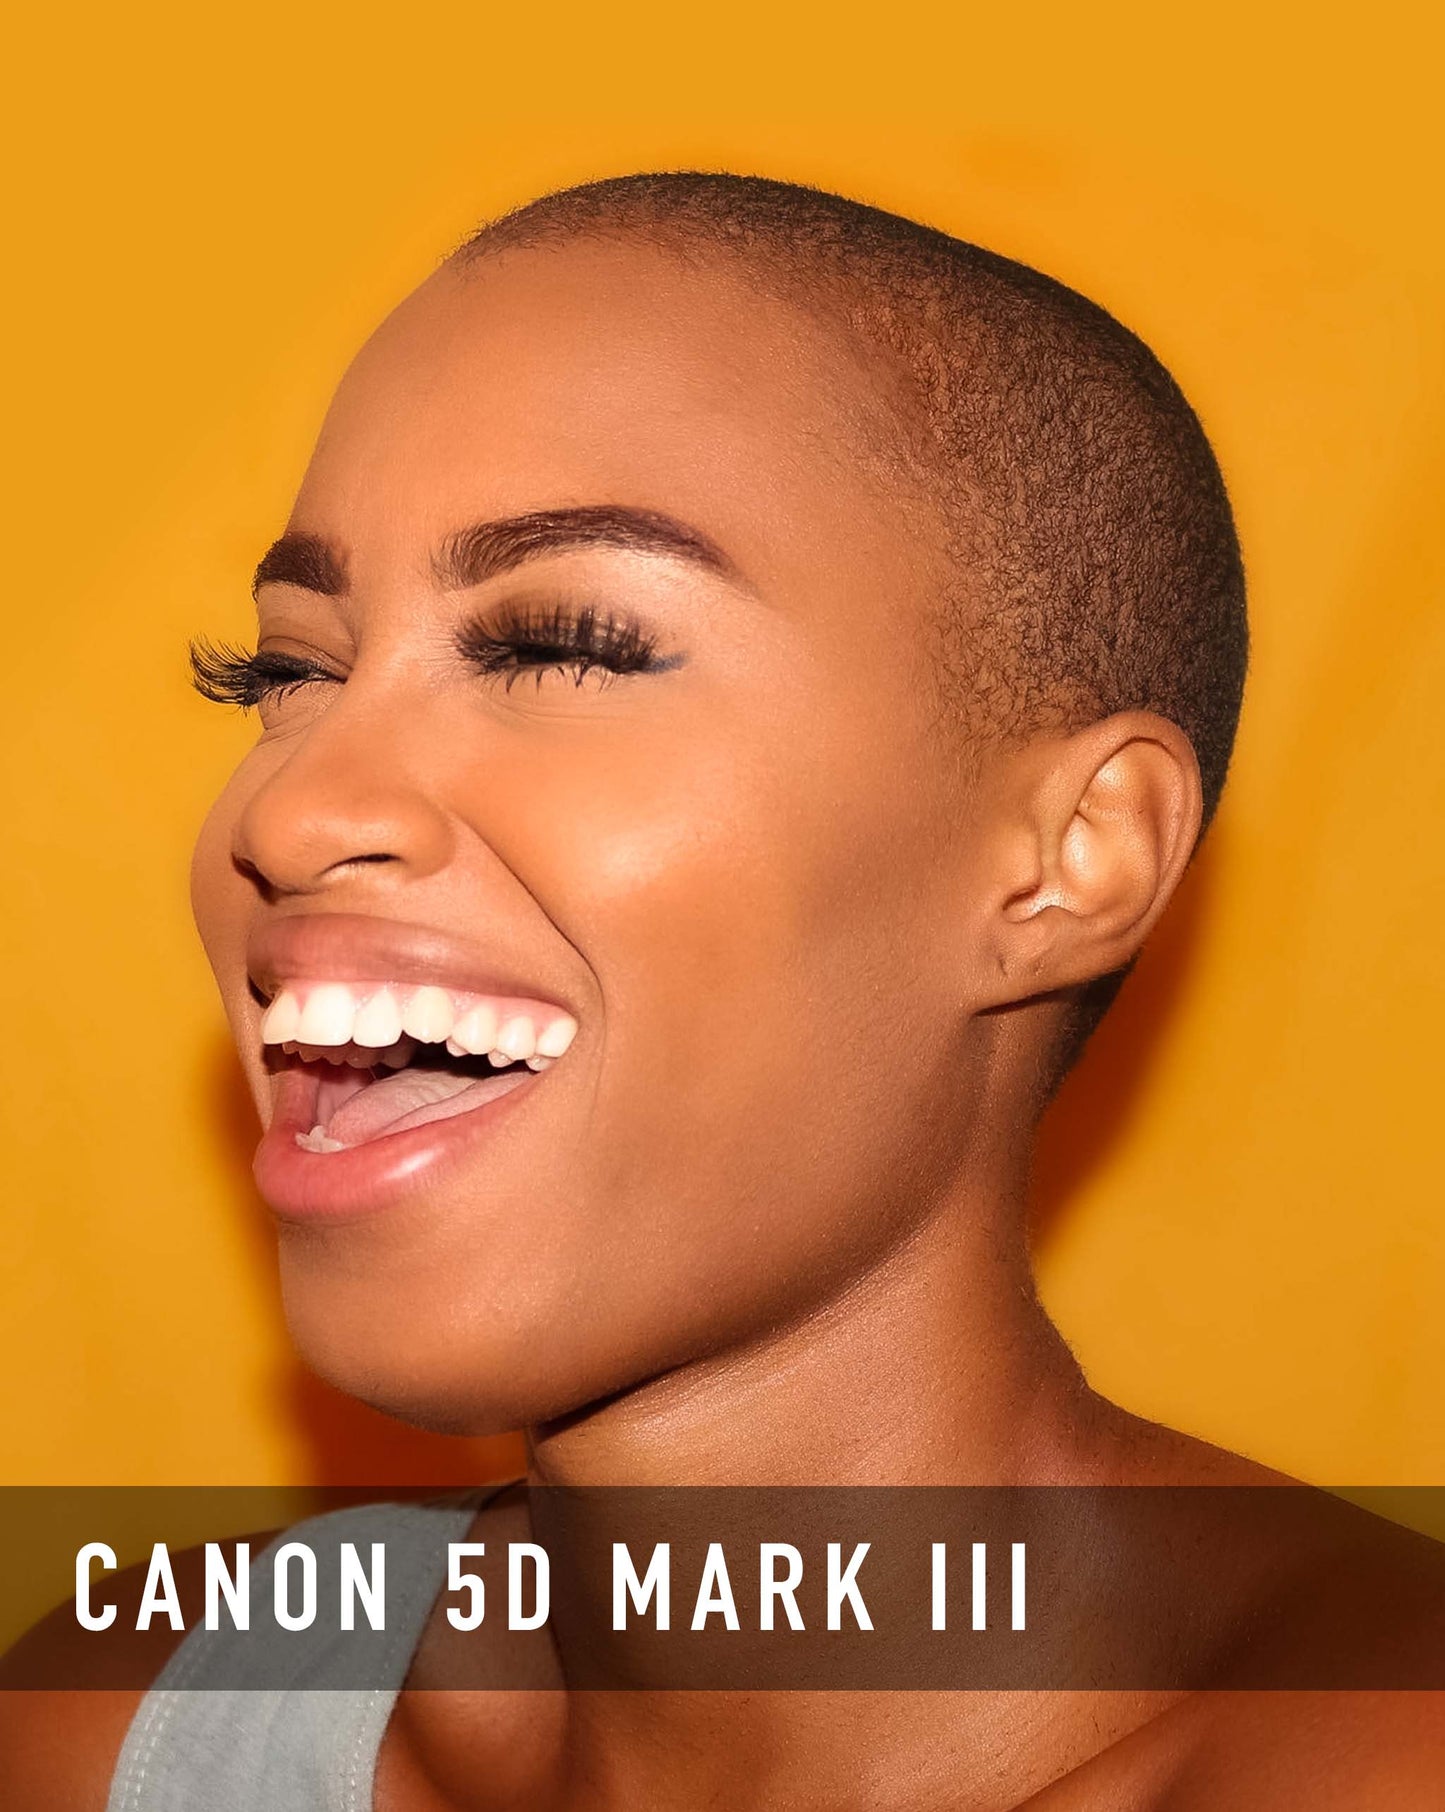 Canon 5D Mark III Look Pack - Skin Tones